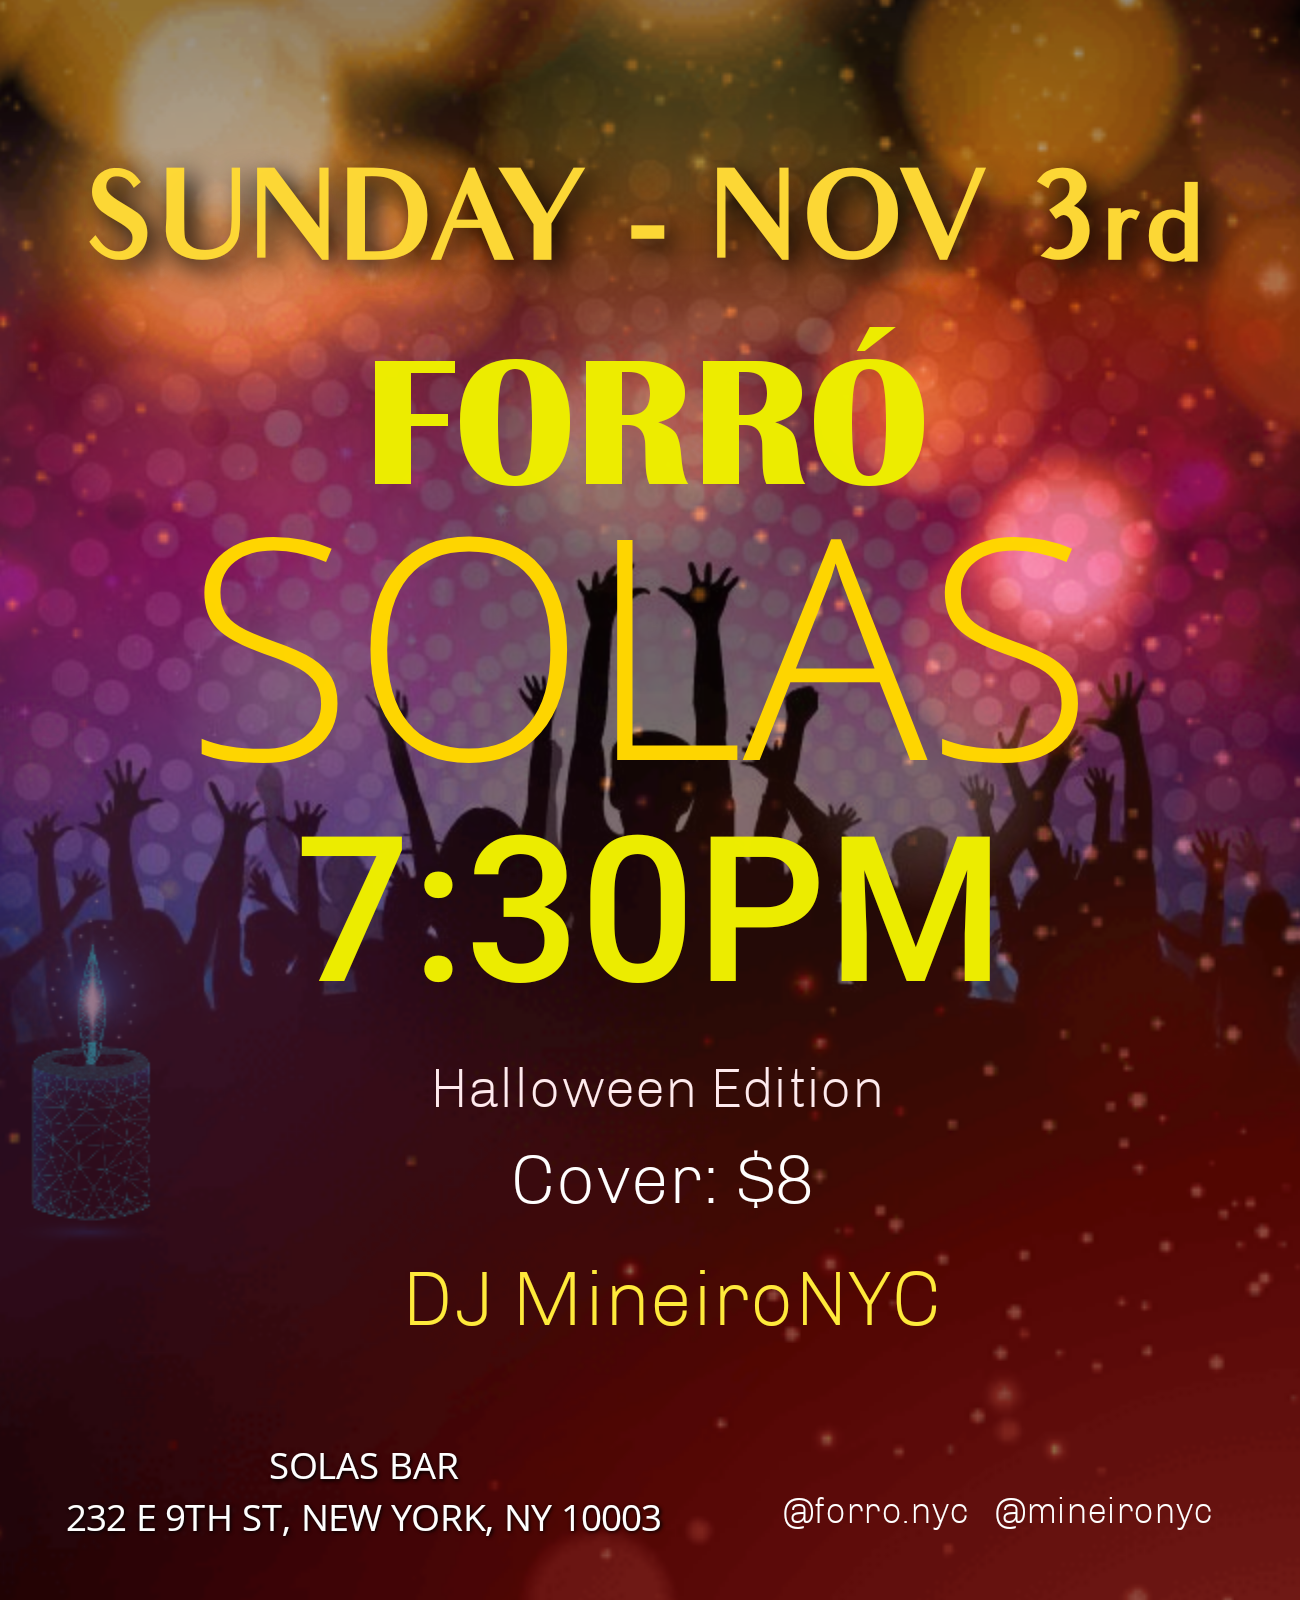 Forró Solas, Sunday November 3, 7:30pm - 11:30pm with DJ MineiroNYC at Solas Bar NYC